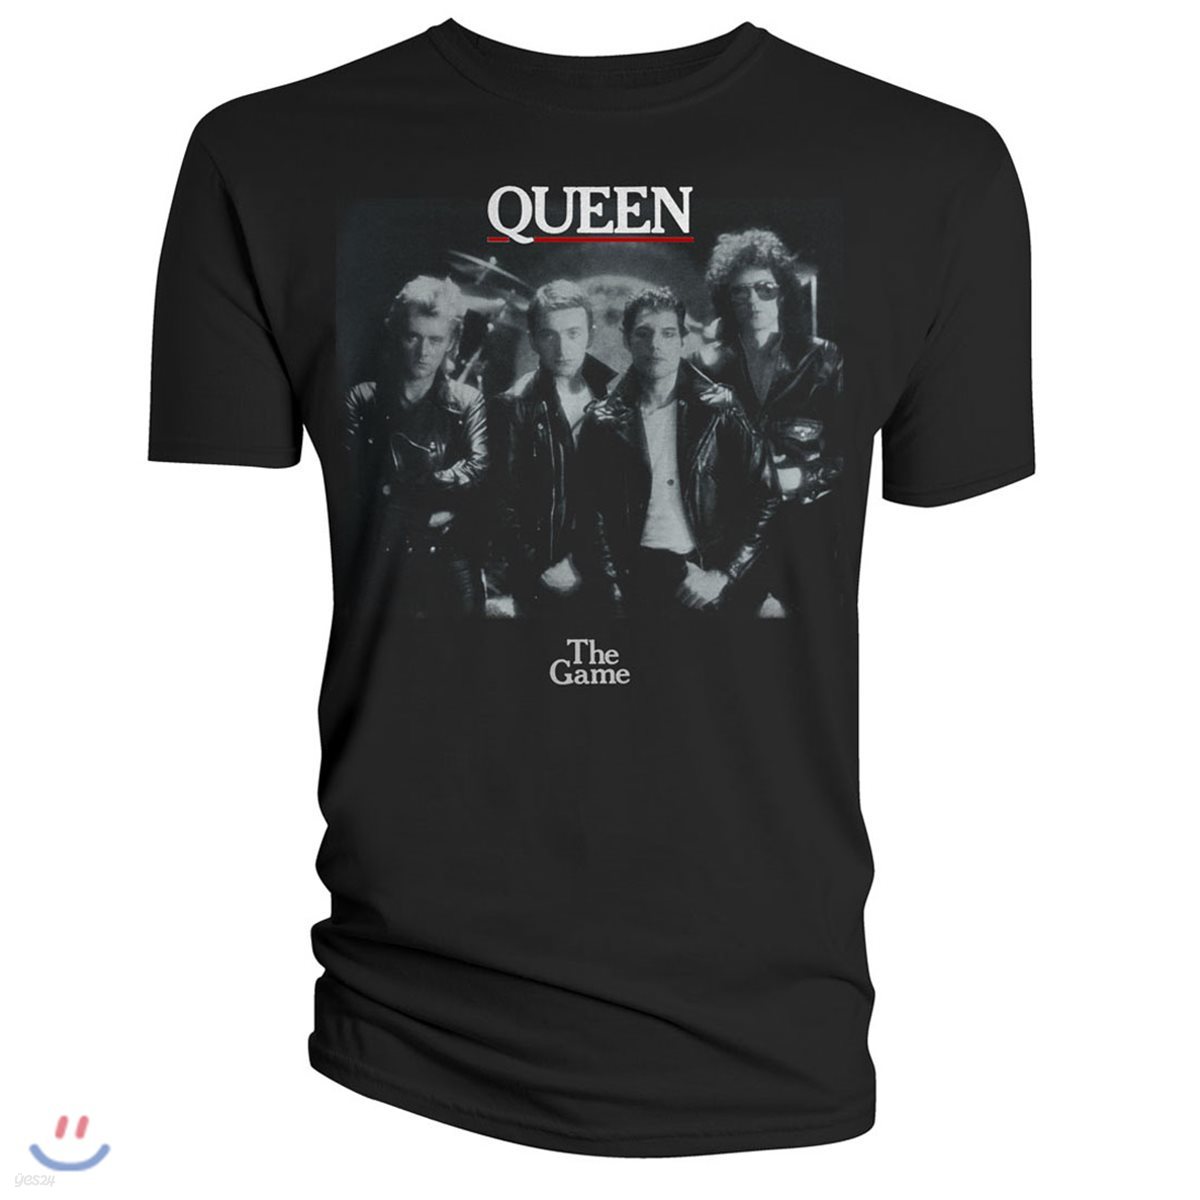 퀸 브라바도 The Game 티셔츠 [L사이즈] (Queen T-Shirt The Game)